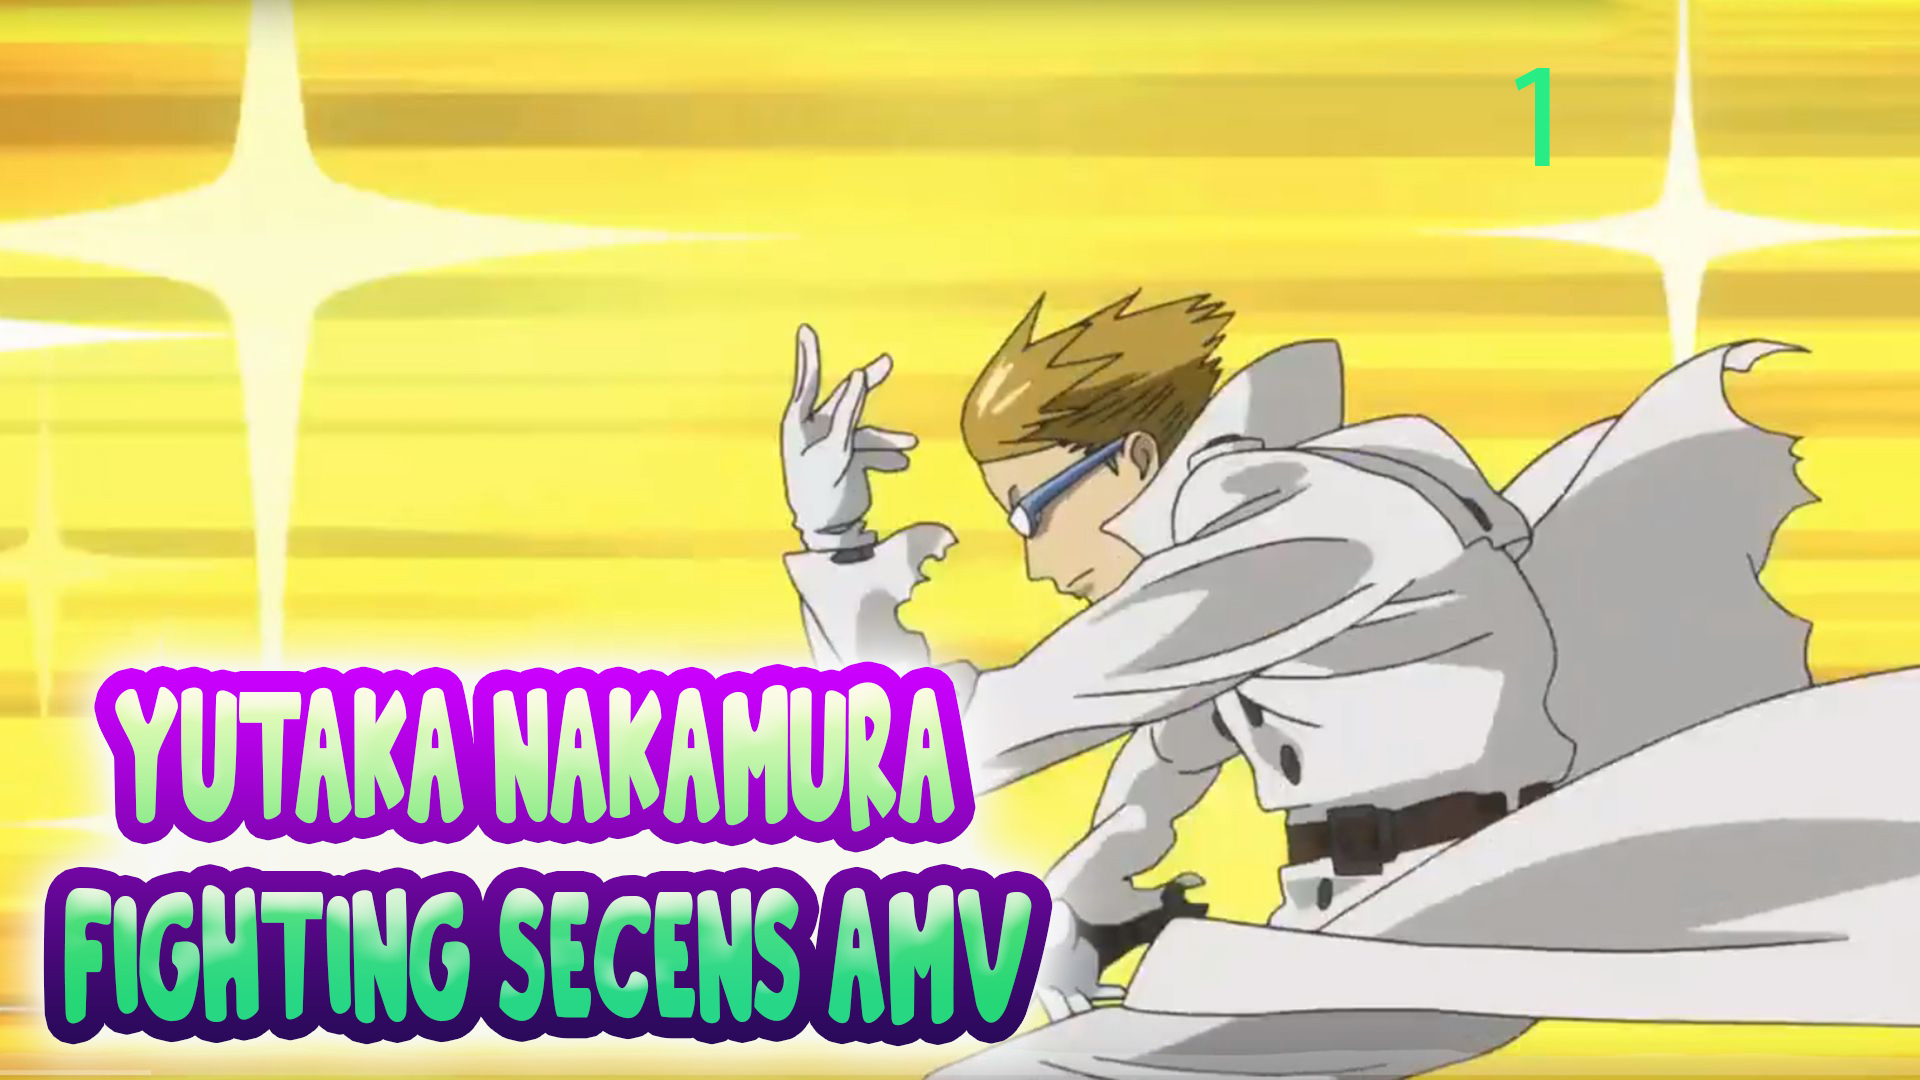 A melhor animação de Yutaka Nakamura? #anime #otaku 